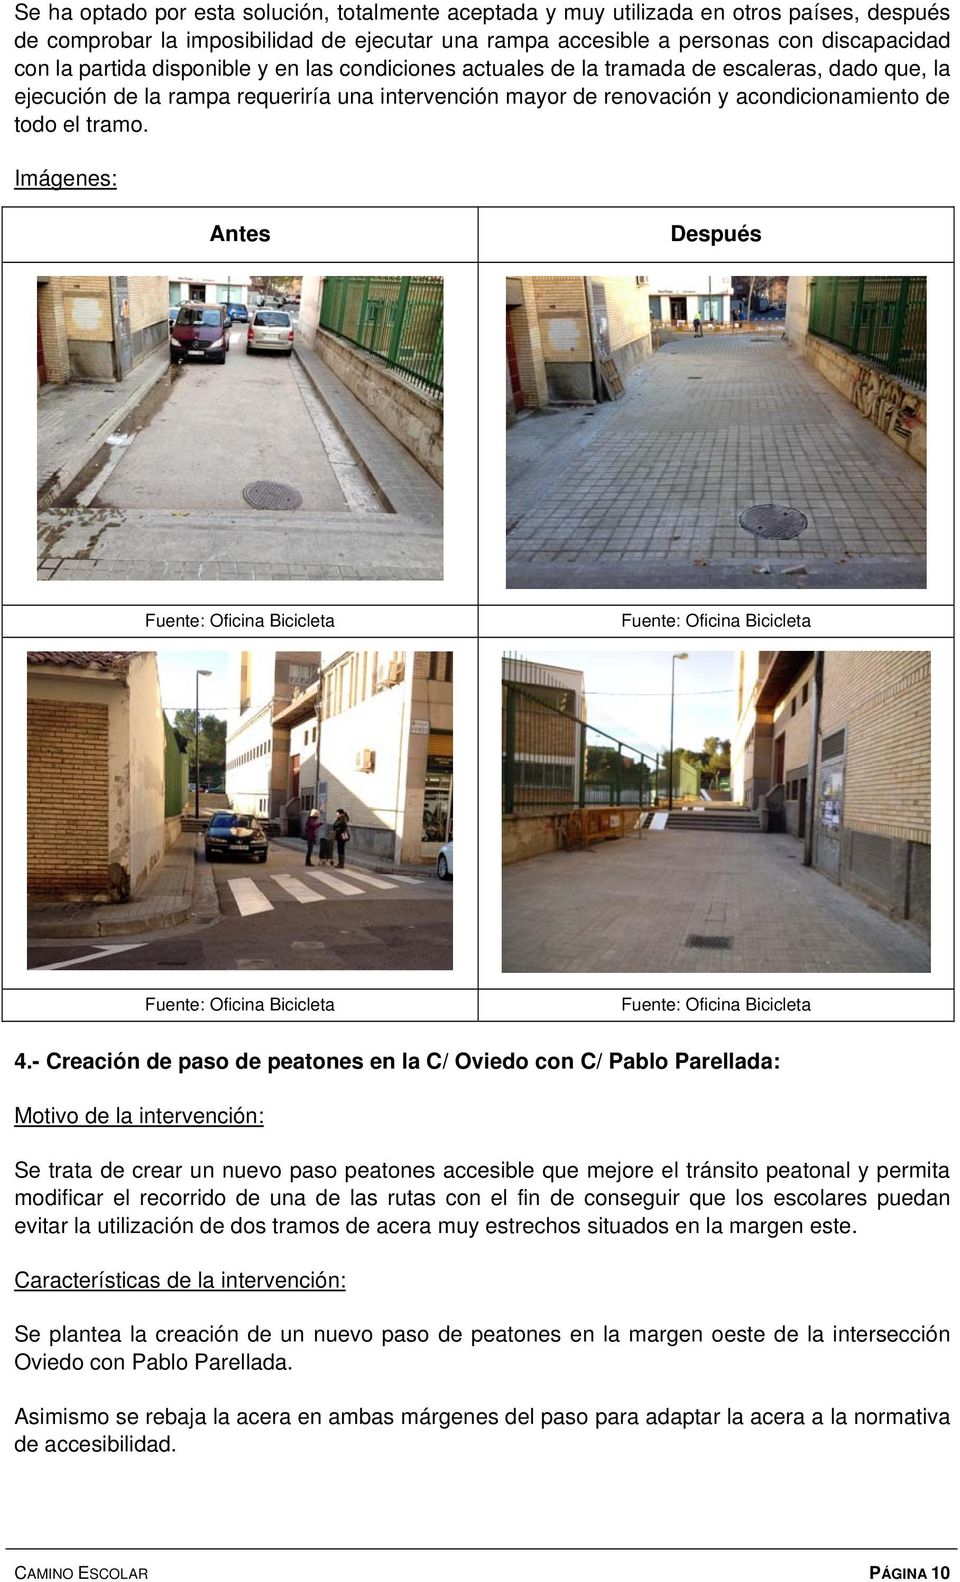 - Creación de paso de peatones en la C/ Oviedo con C/ Pablo Parellada: Se trata de crear un nuevo paso peatones accesible que mejore el tránsito peatonal y permita modificar el recorrido de una de